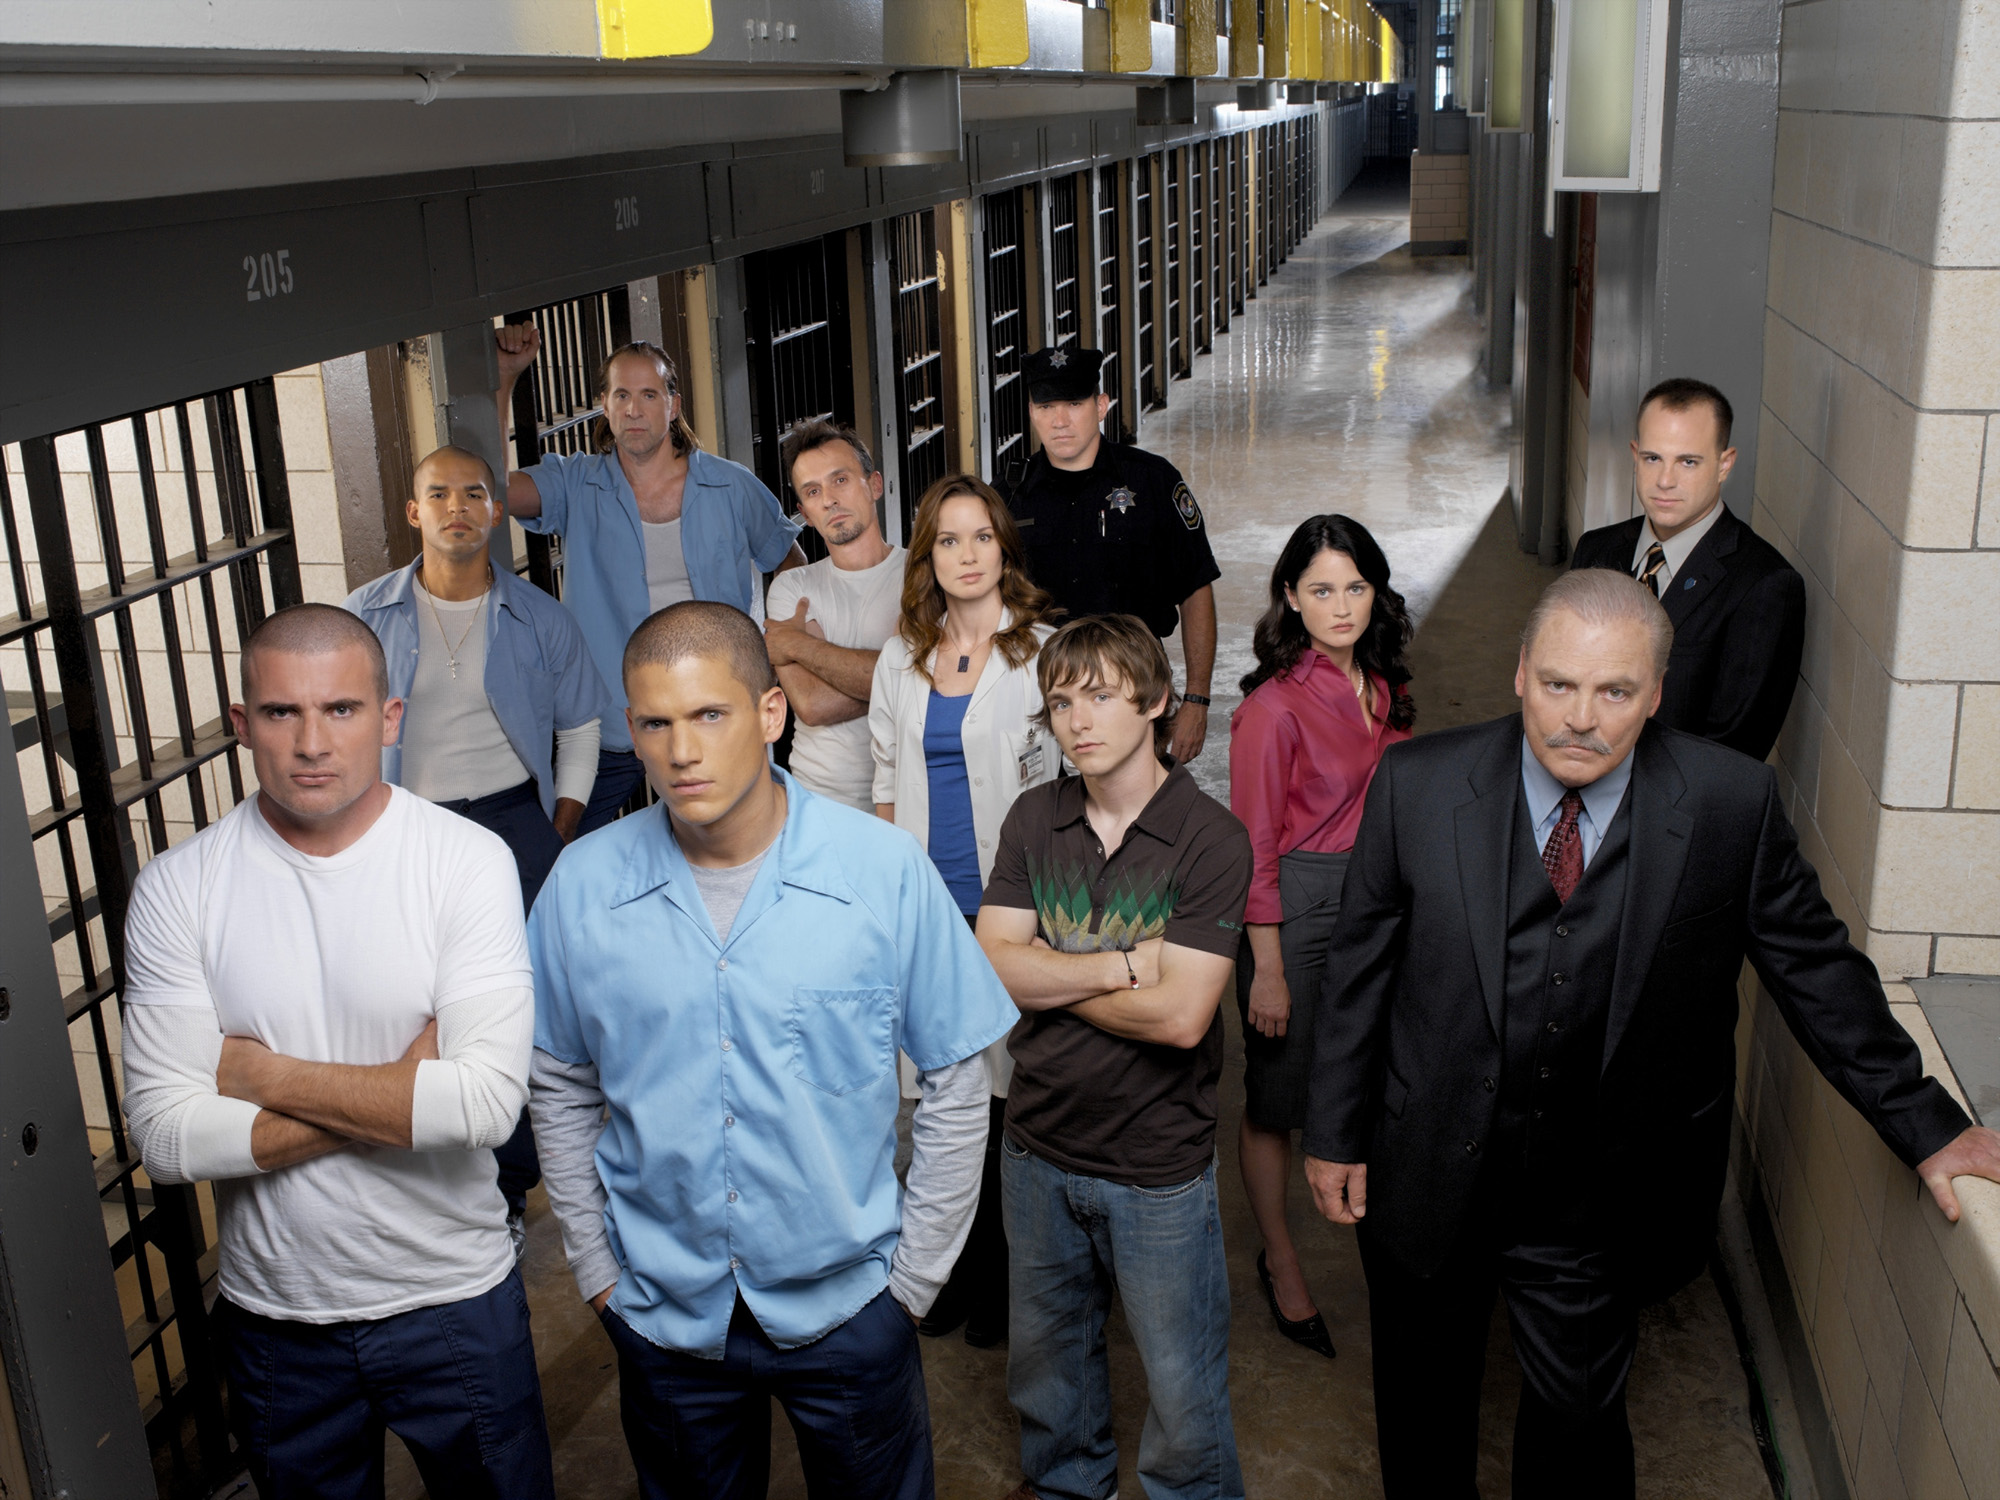 cast of prison break season 1